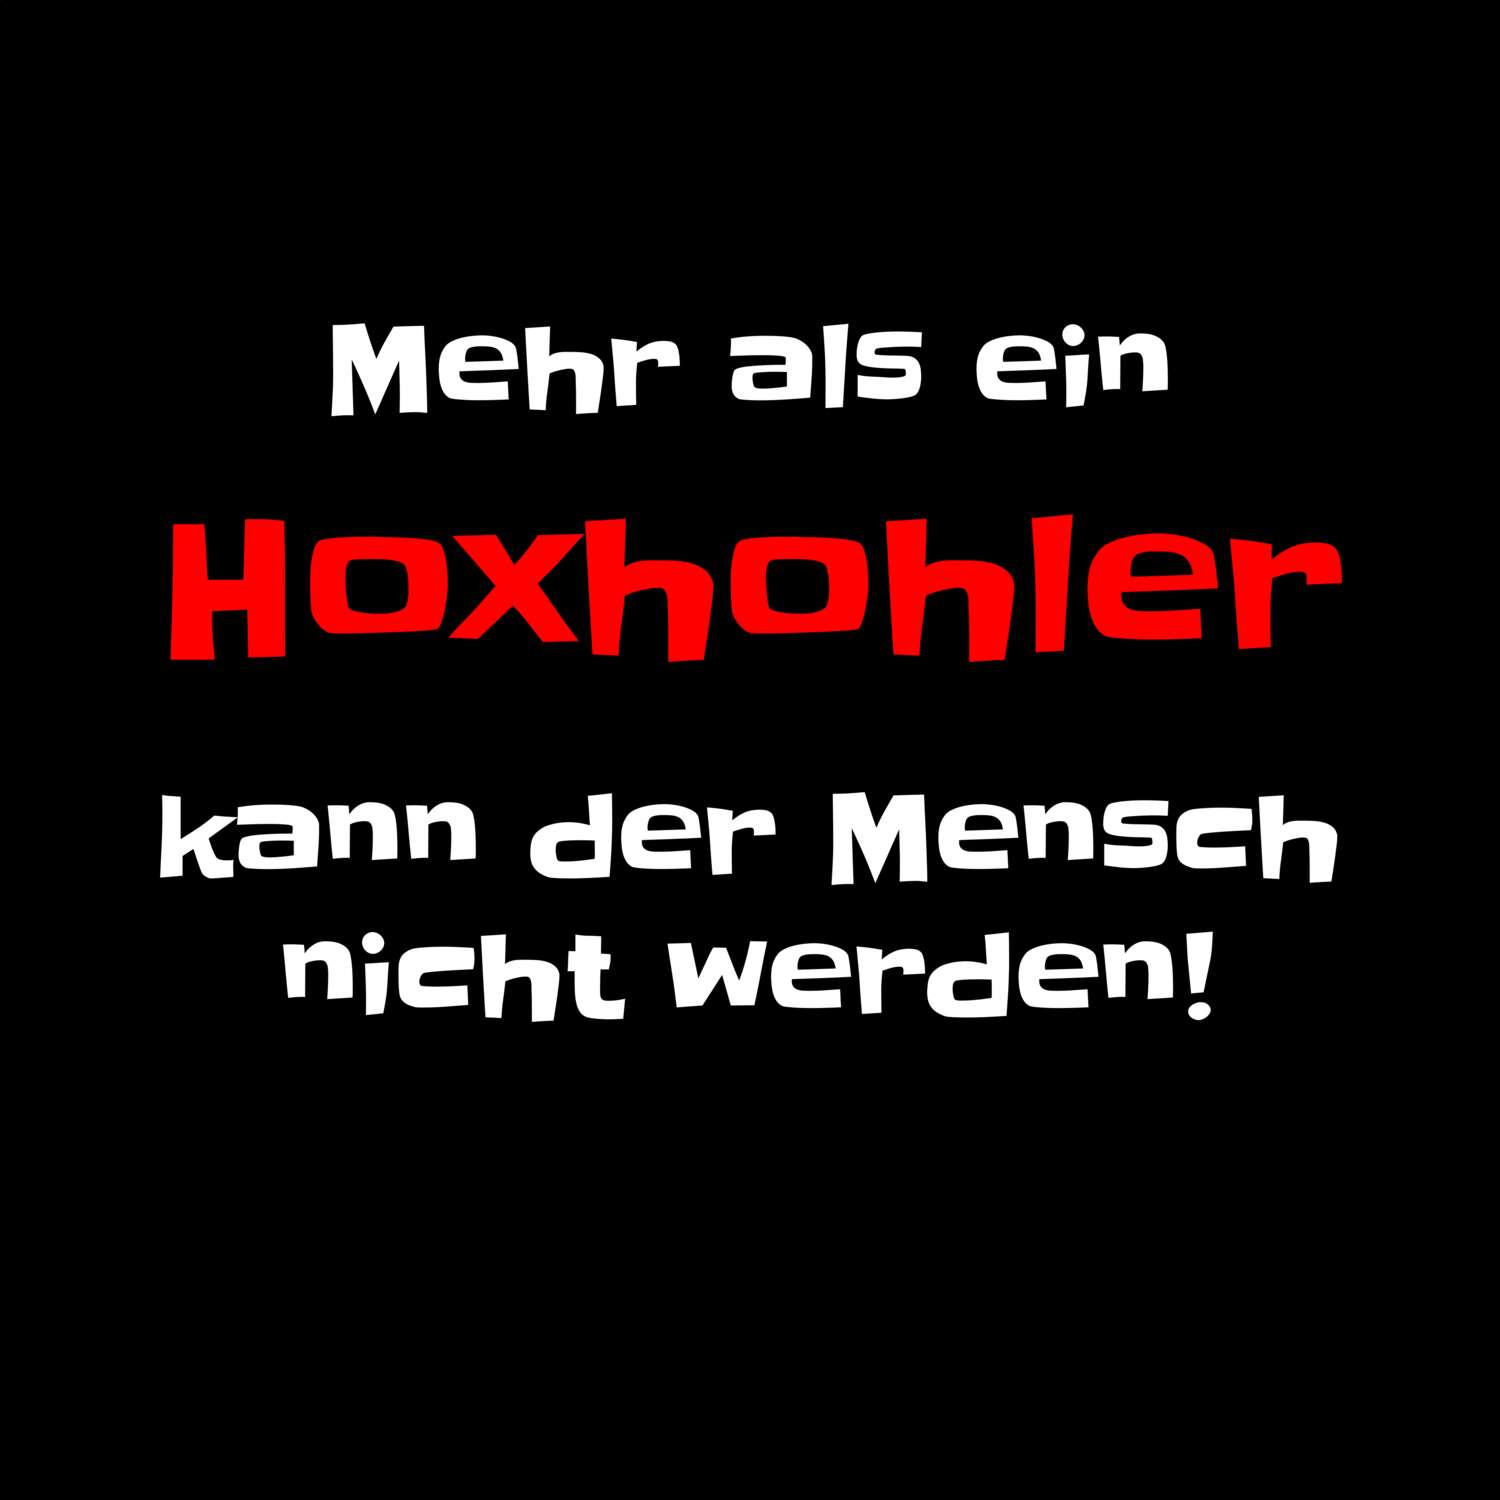 Hoxhohl T-Shirt »Mehr als ein«